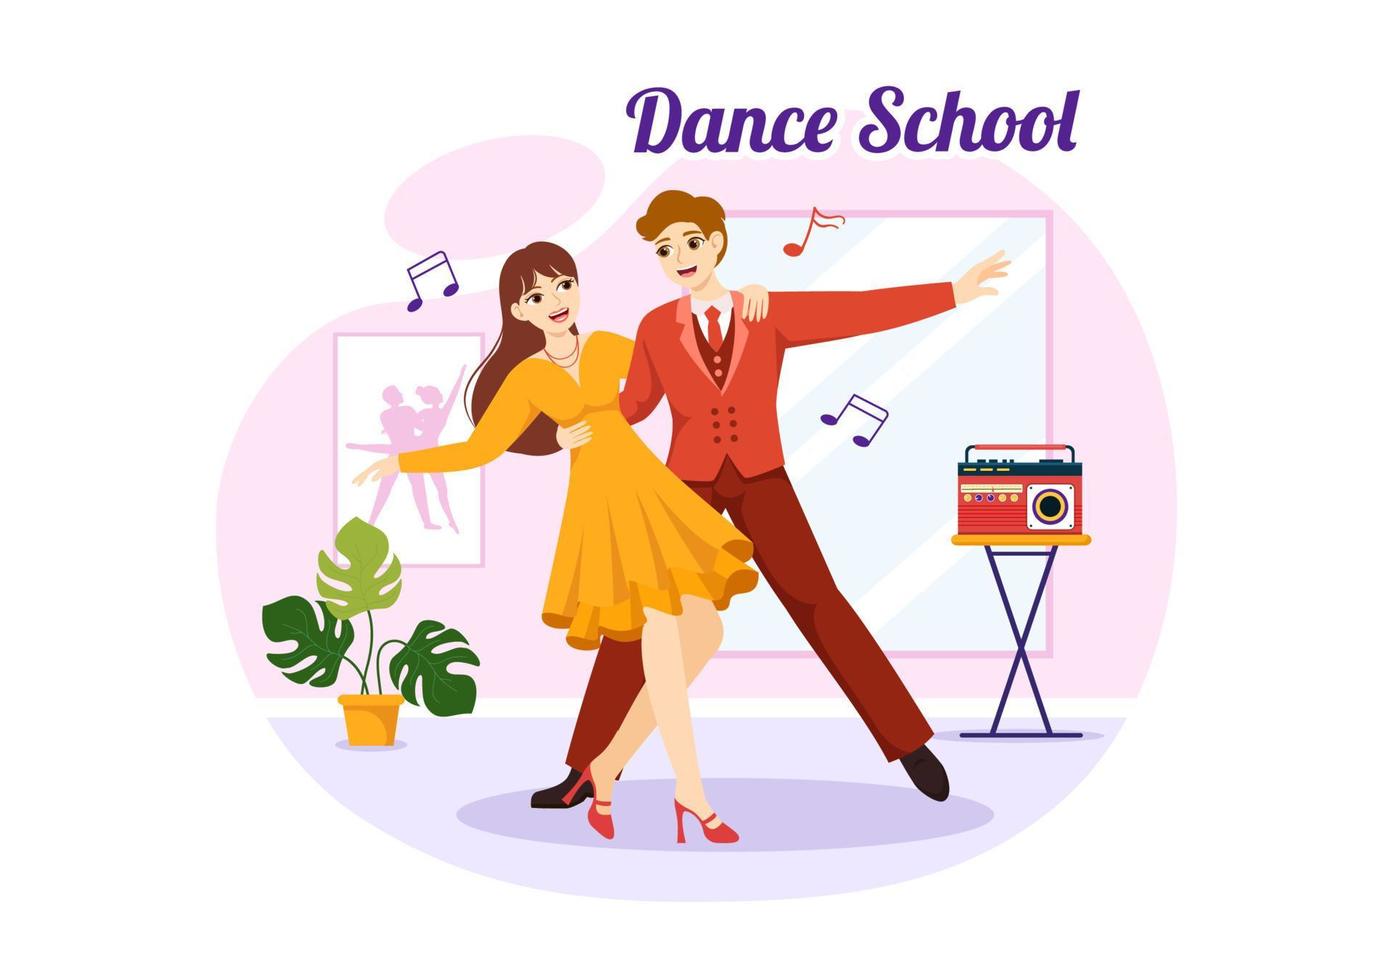 danza colegio ilustración de personas bailando o coreografía con música equipo en estudio en plano dibujos animados mano dibujado aterrizaje página plantillas vector